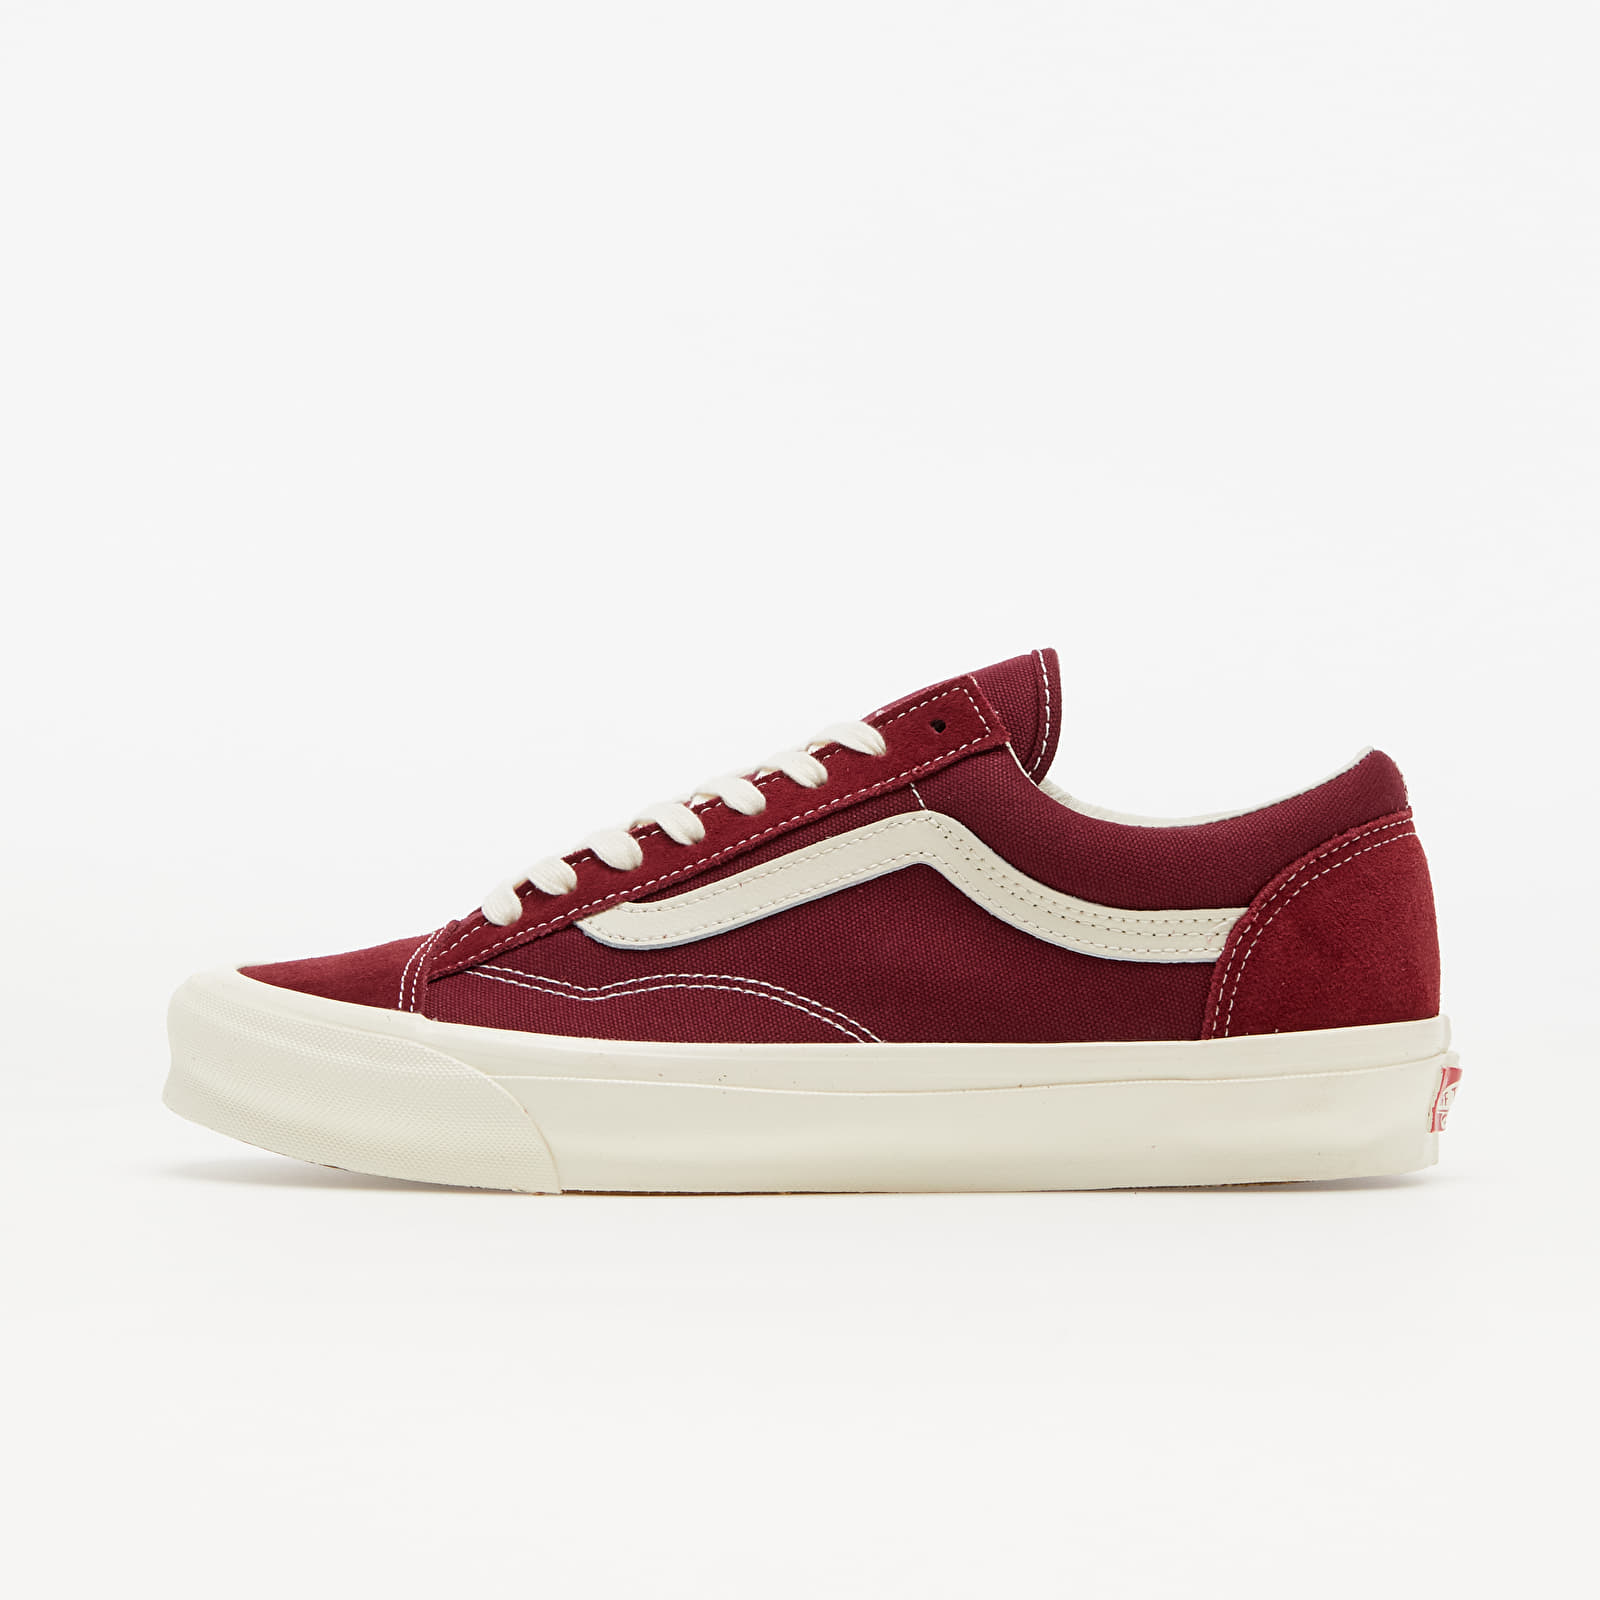 Men's shoes Vans Vault OG Style 36 LX (Suede/ Canvas) Pomegranate/ Classic White